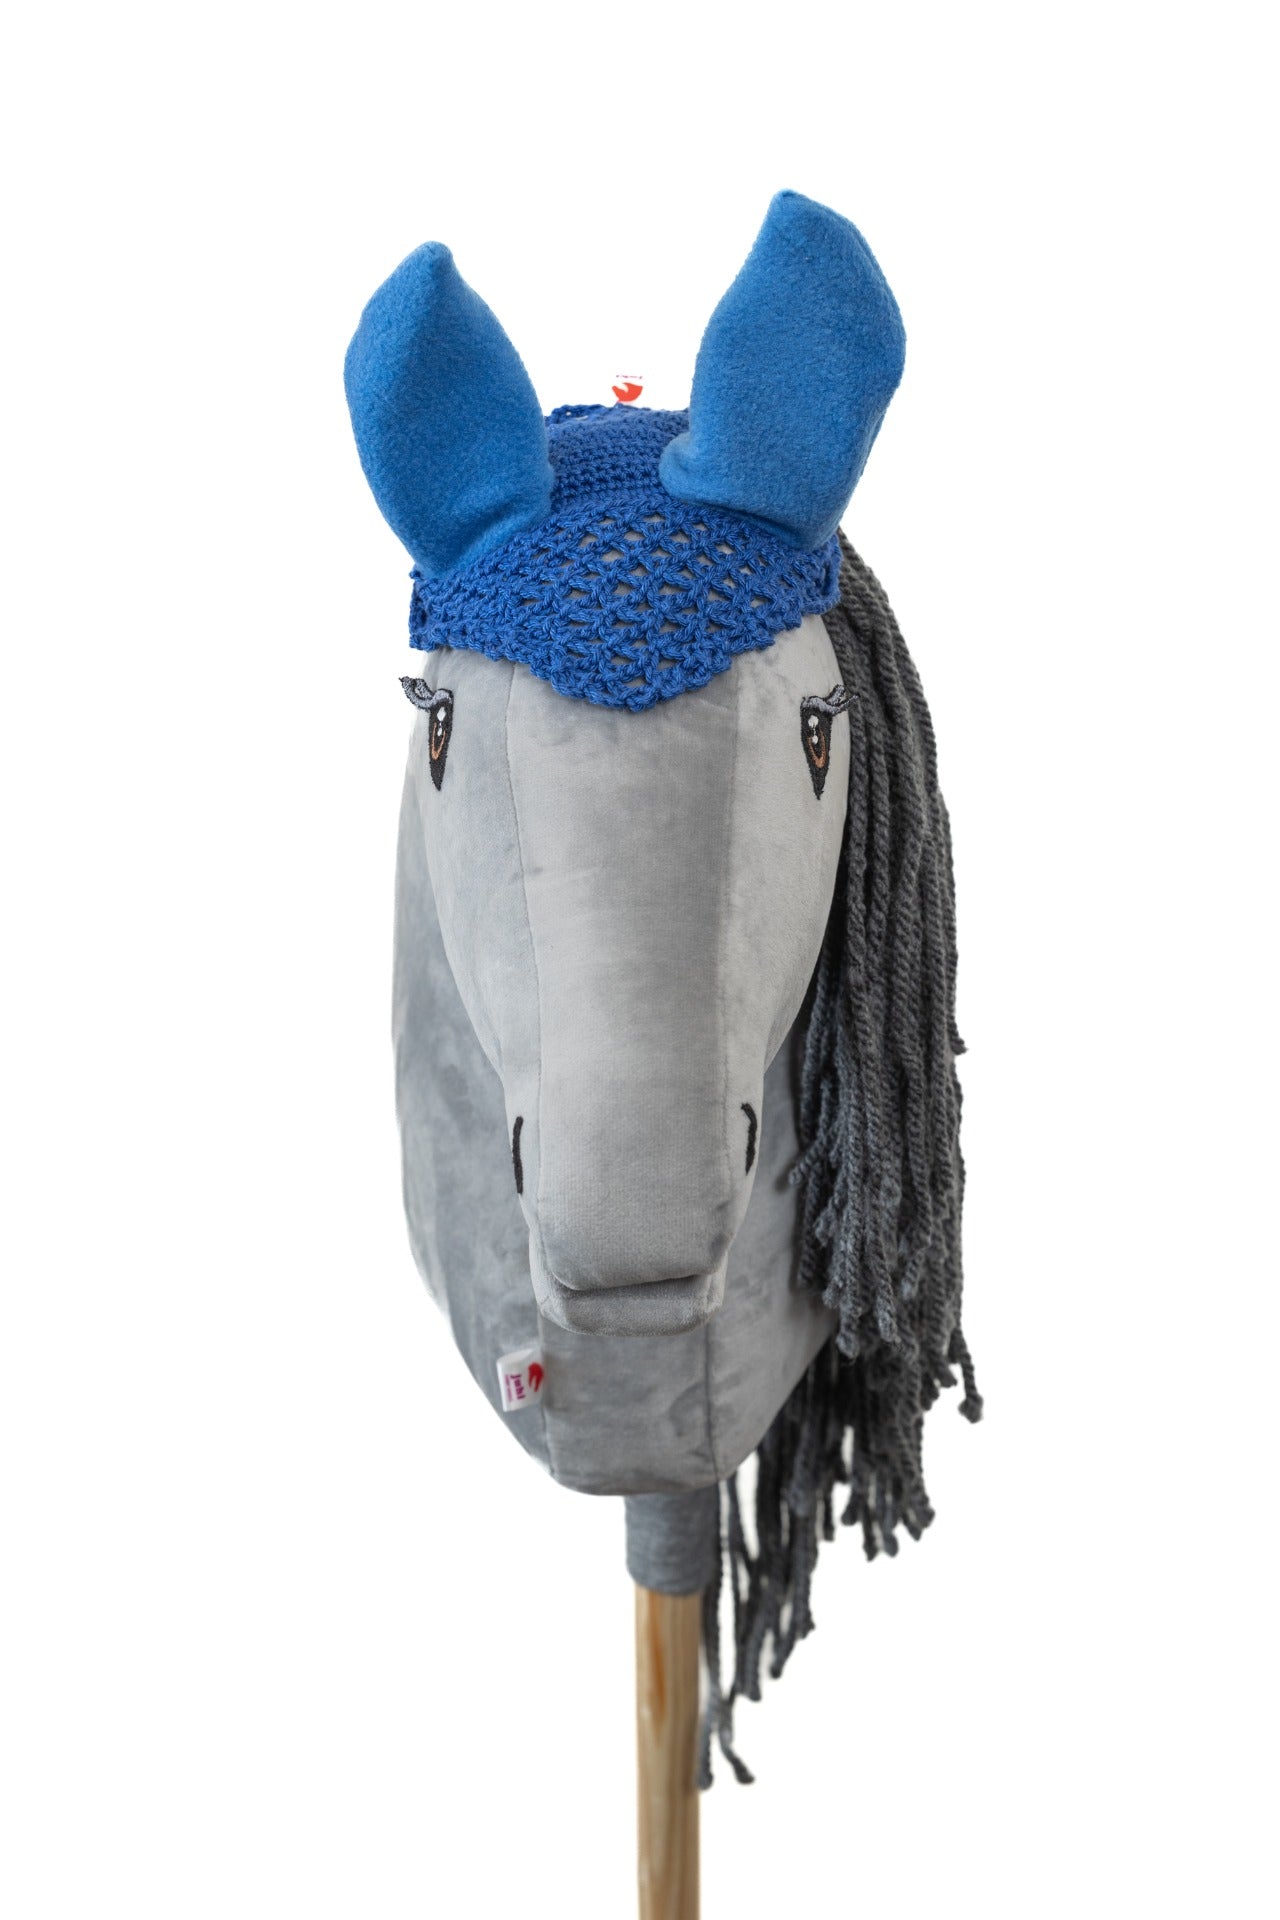 Ear net crocheted - Dark blue with blue ears - Foal